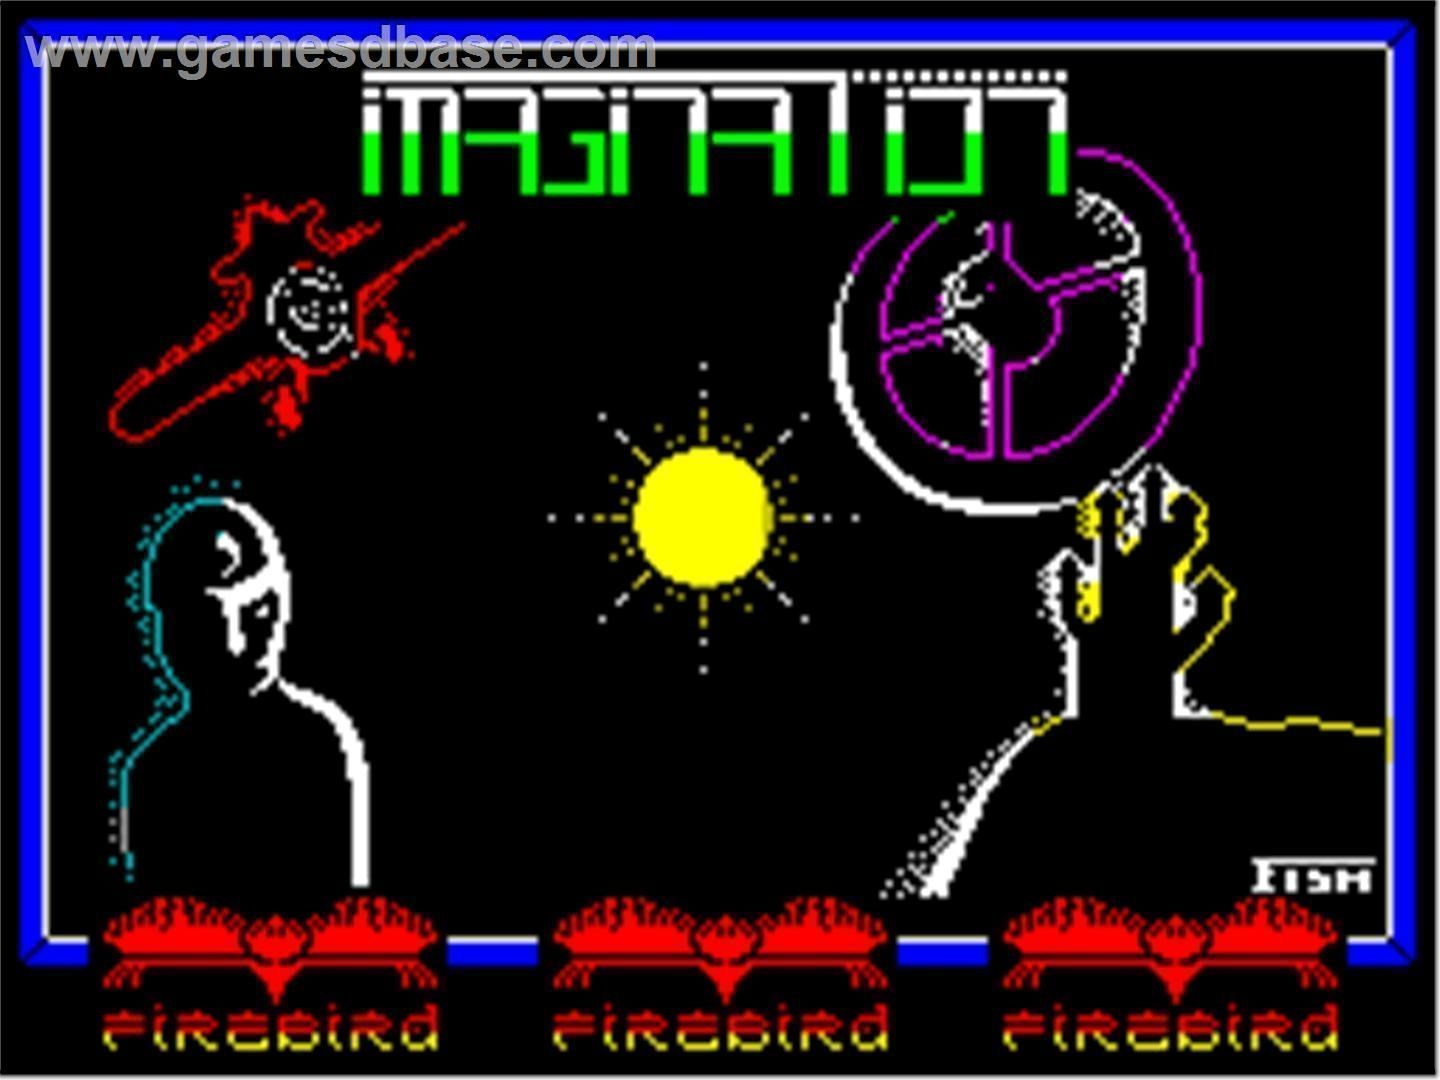 Imagination (1987)(Firebird Software)[a3]